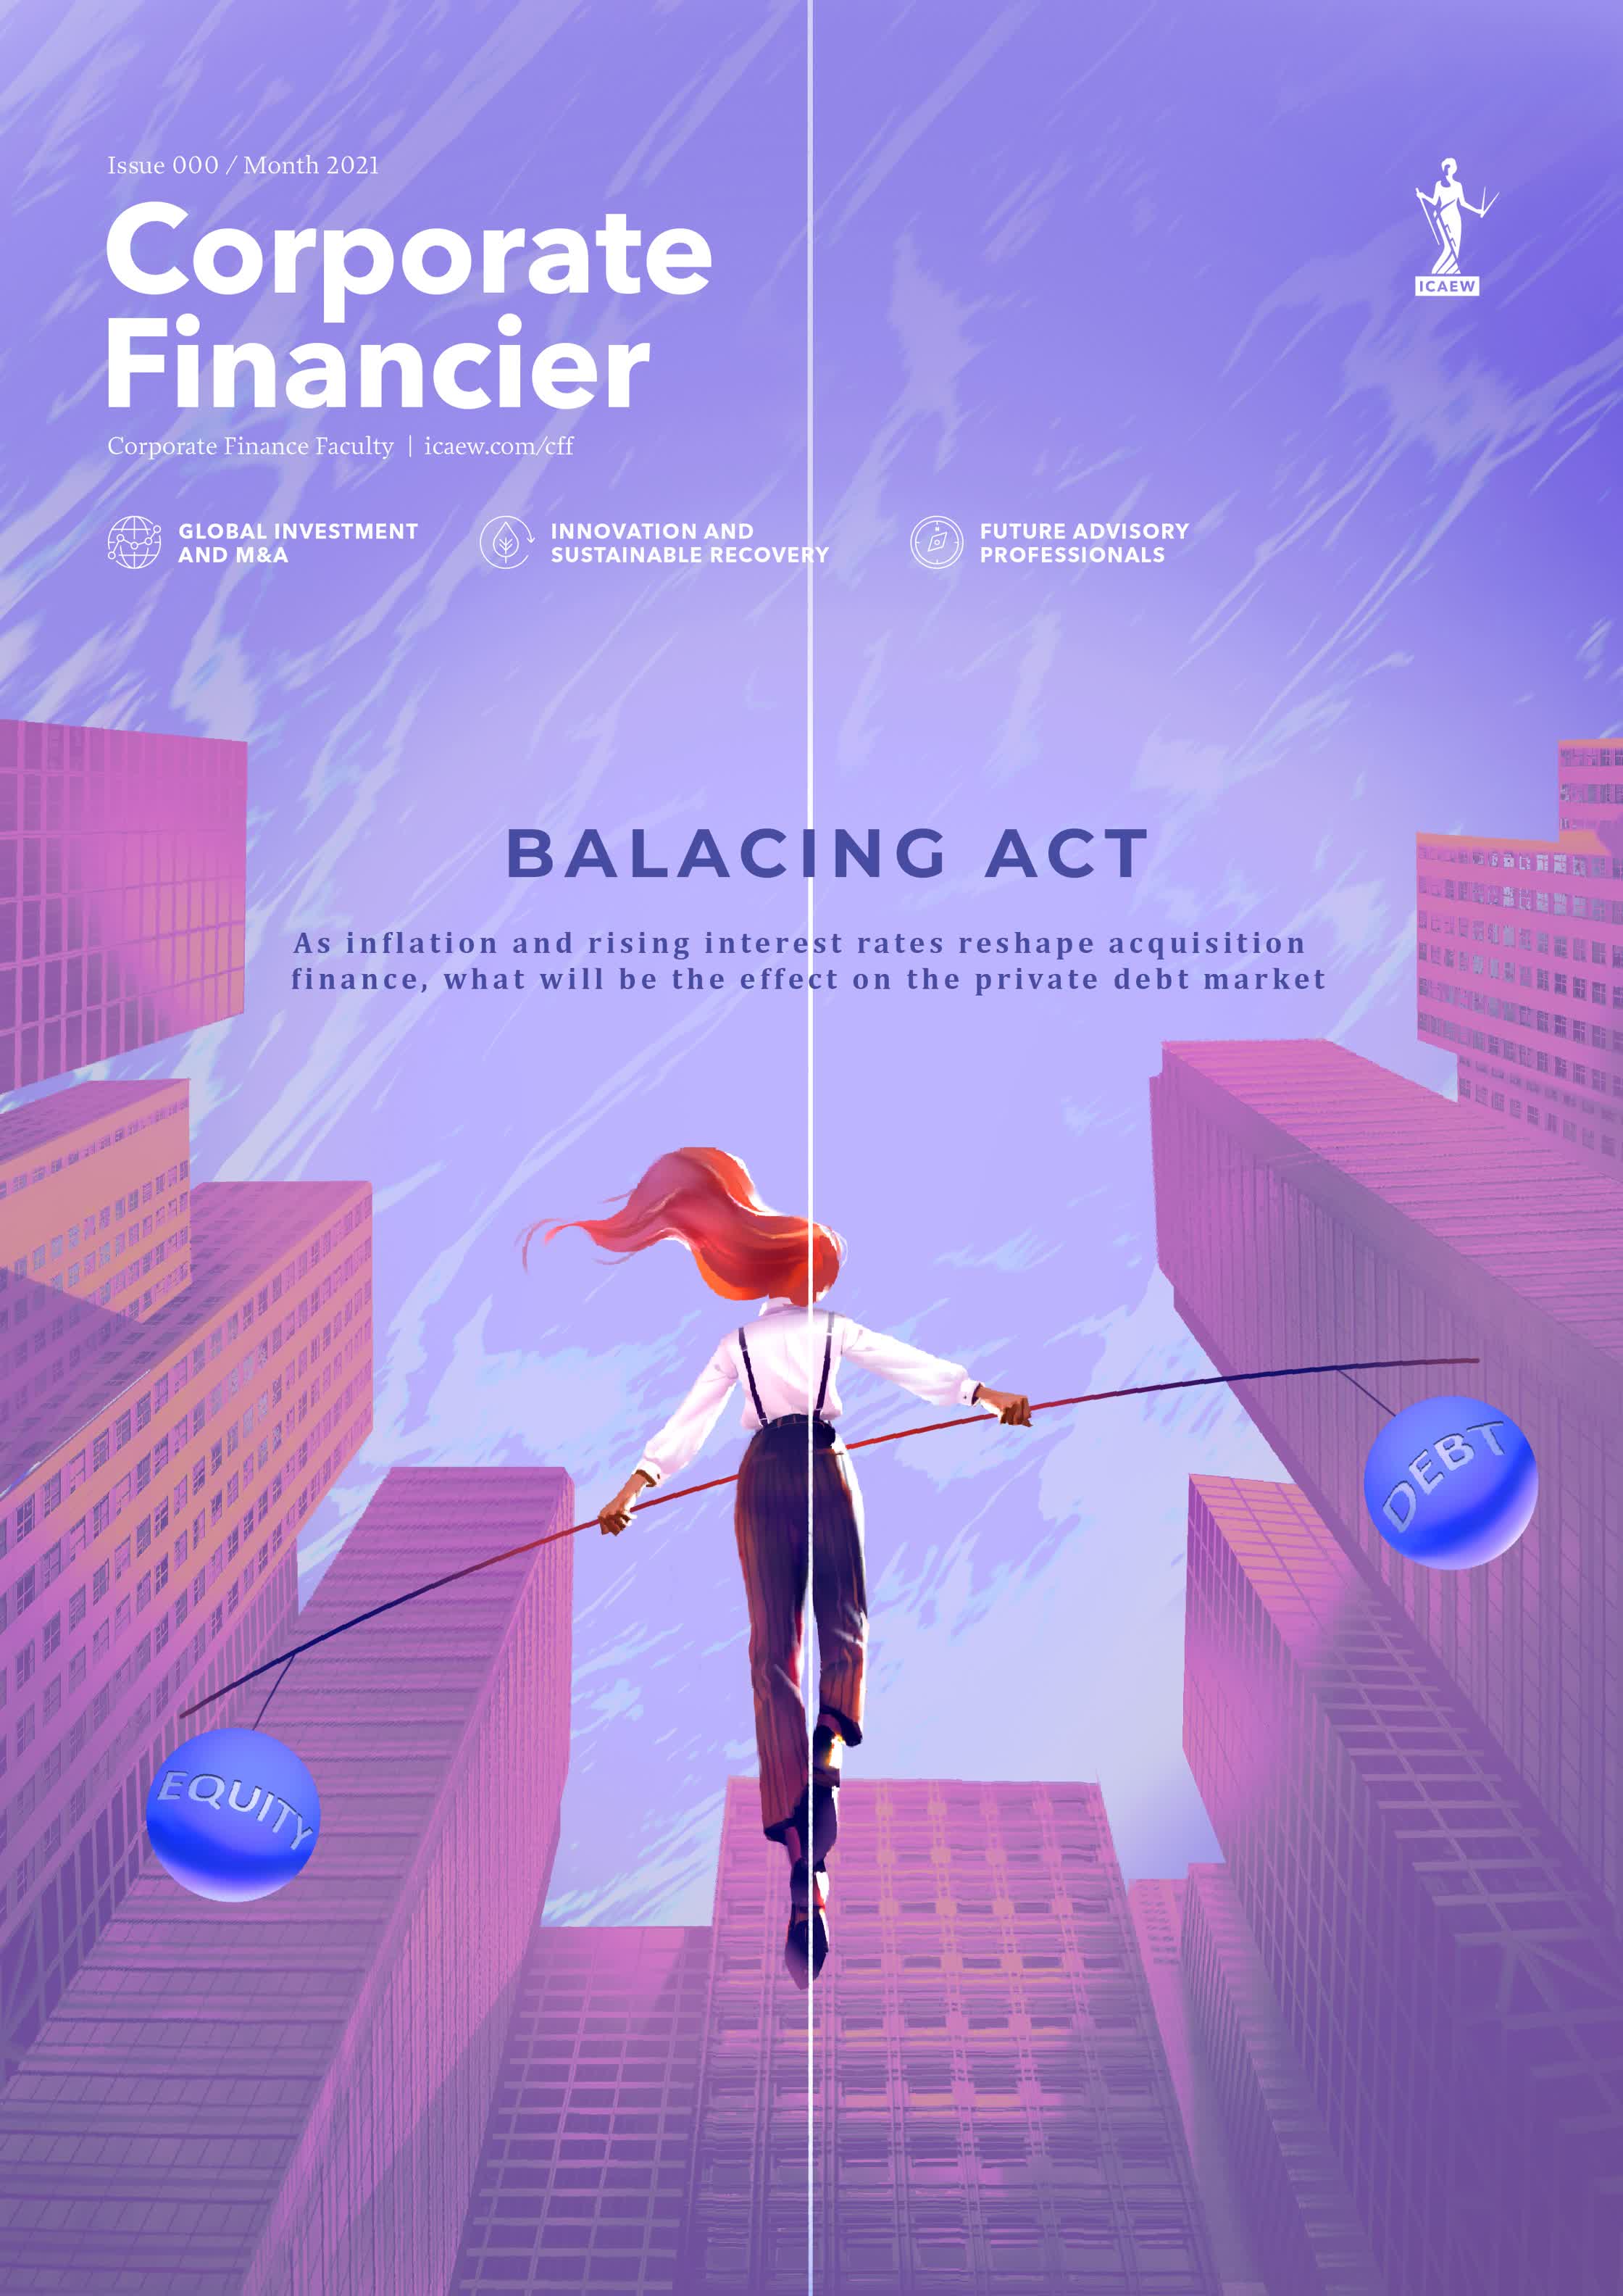 Corporate Financer - Cover art.jpg